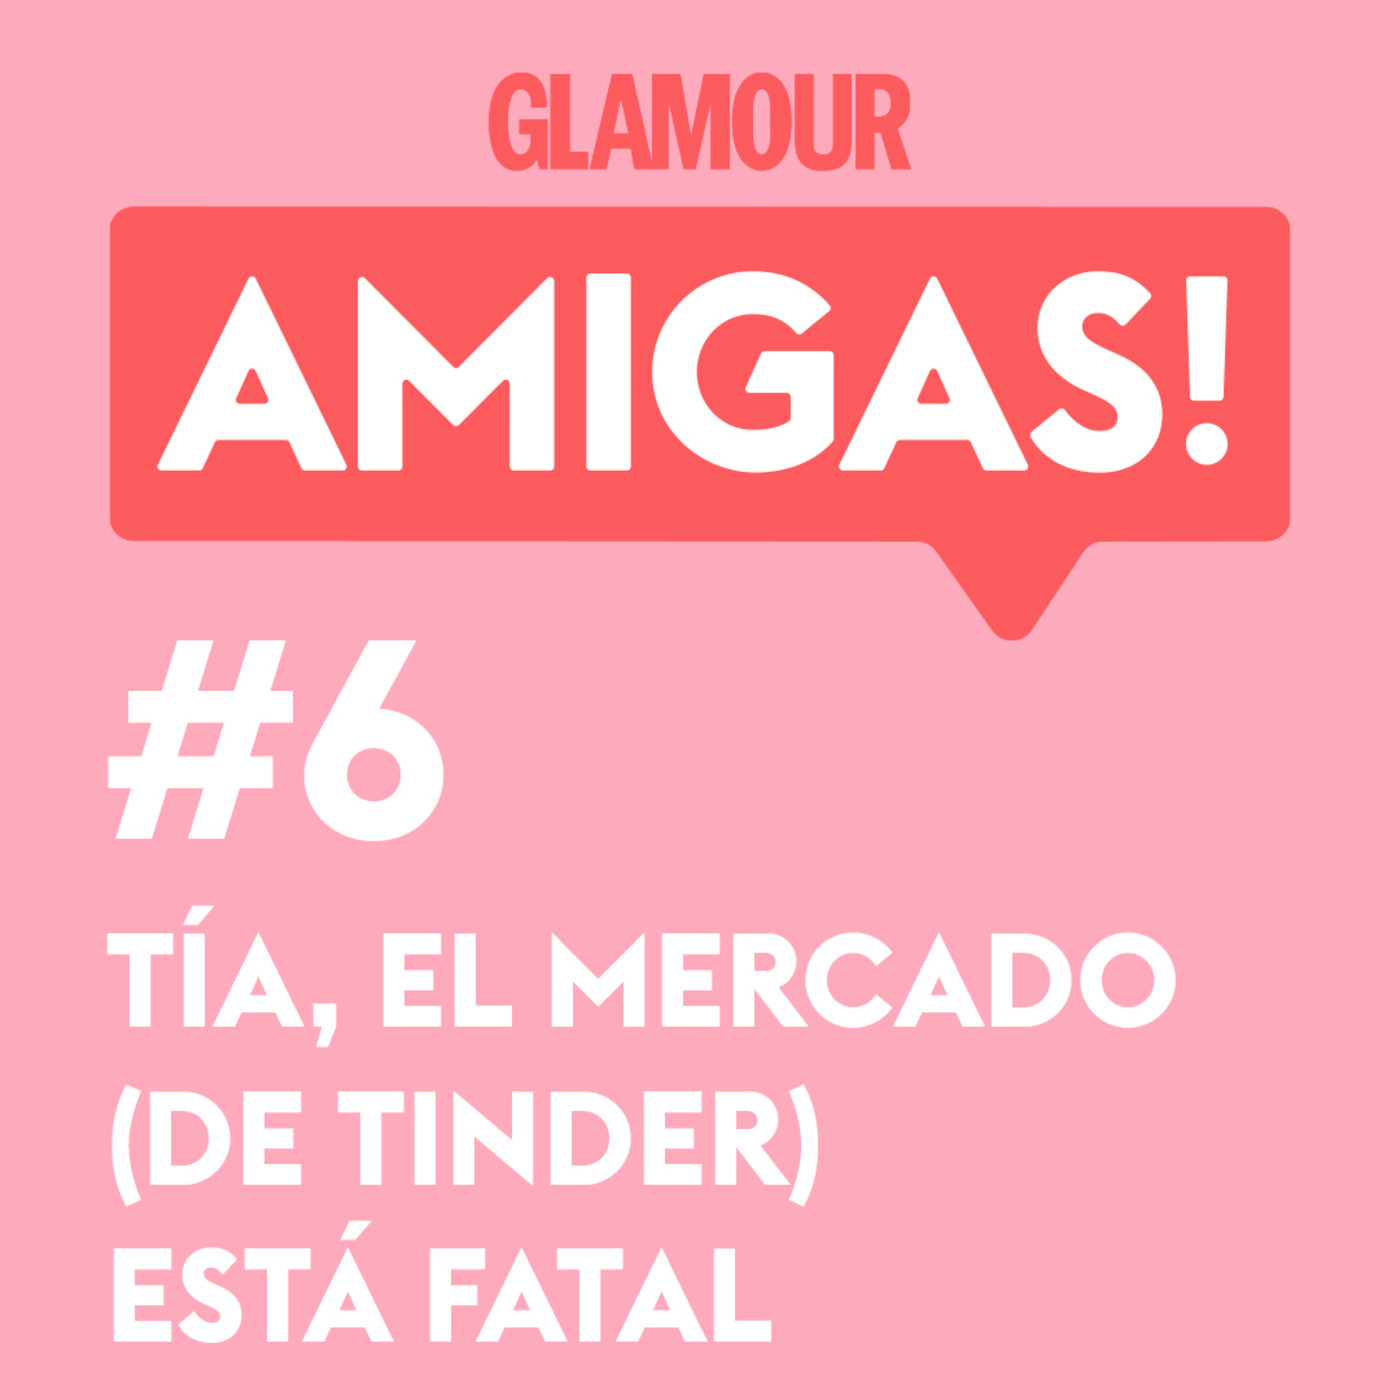 Glamour Amigas! #6: Tía, el mercado de Tinder está fatal. Con Paula Púa.